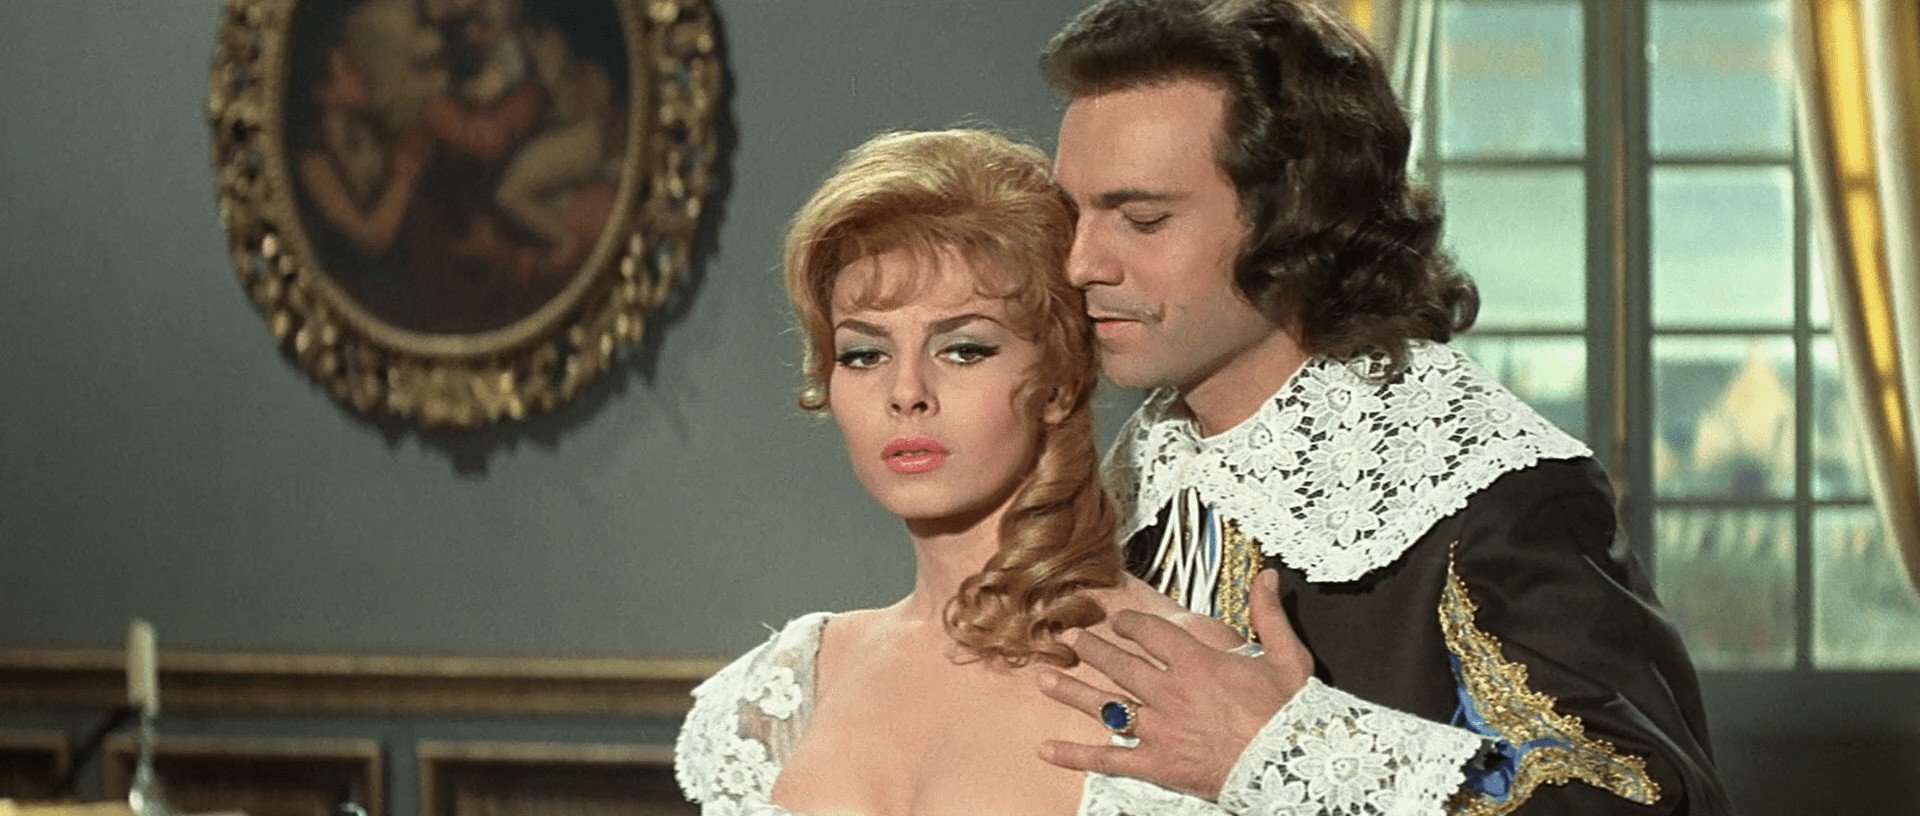 Анжелика и Король (1966)